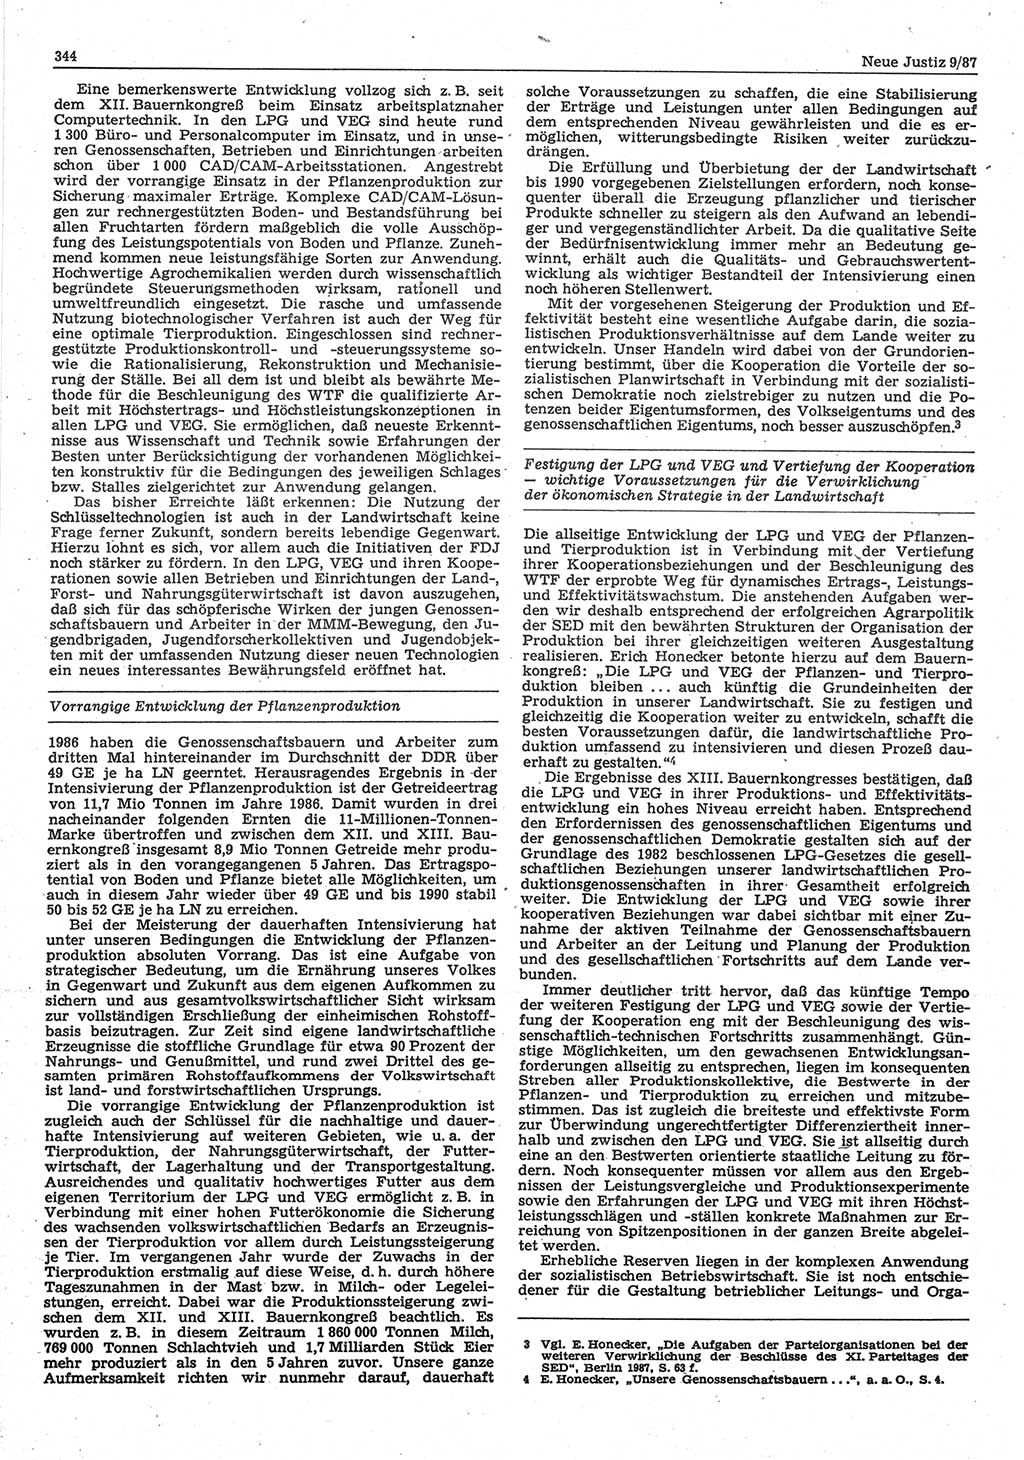 Neue Justiz (NJ), Zeitschrift für sozialistisches Recht und Gesetzlichkeit [Deutsche Demokratische Republik (DDR)], 41. Jahrgang 1987, Seite 344 (NJ DDR 1987, S. 344)